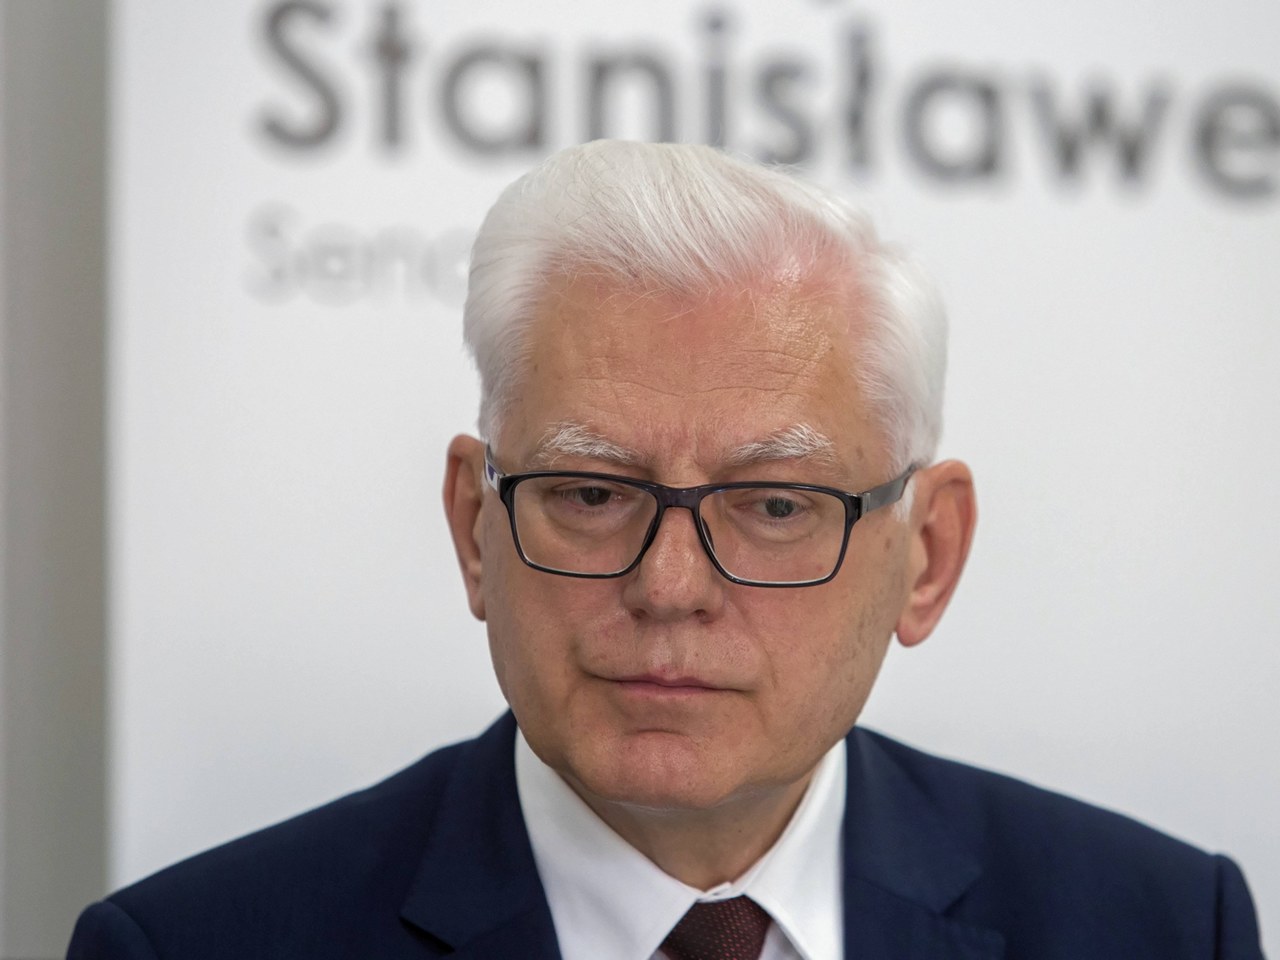 Dymisja wiceministra nauki Andrzeja Stanisławka za kontrowersyjną wypowiedź